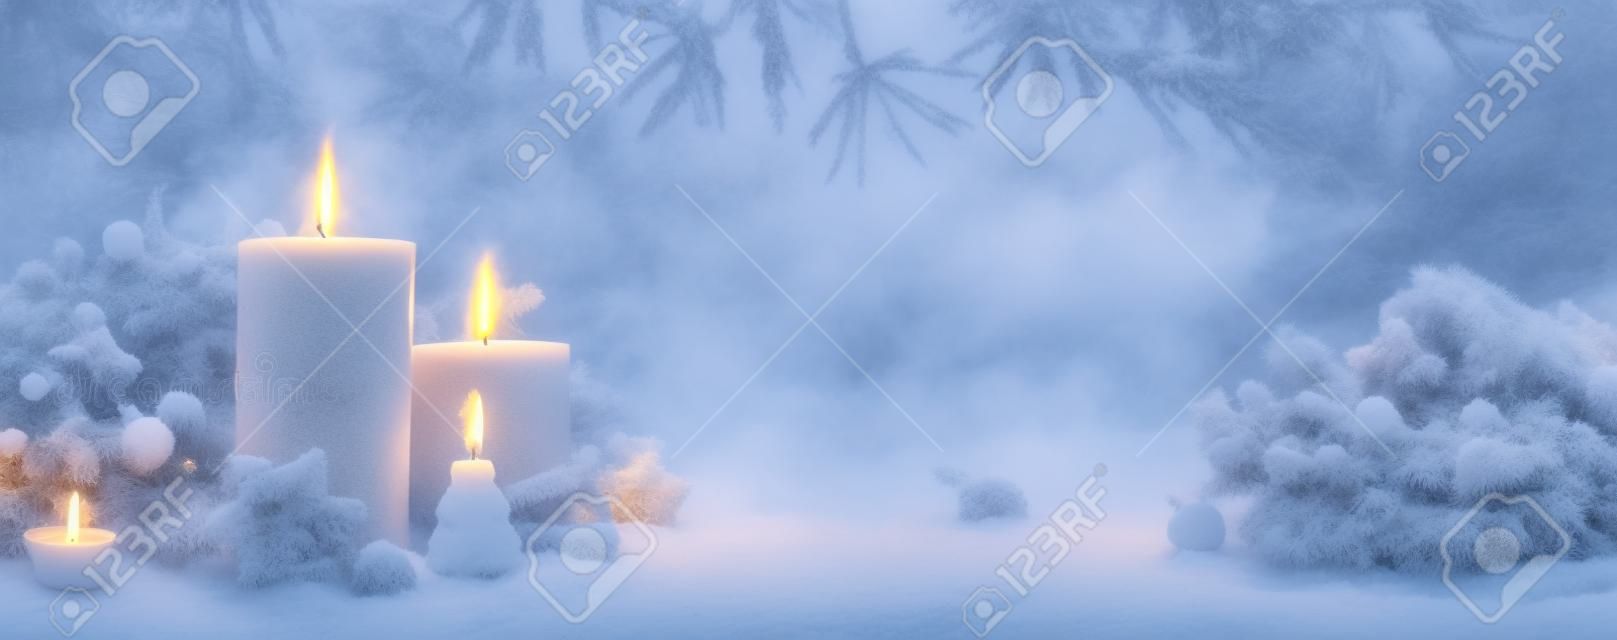 Paisaje de bosque de invierno con velas encendidas